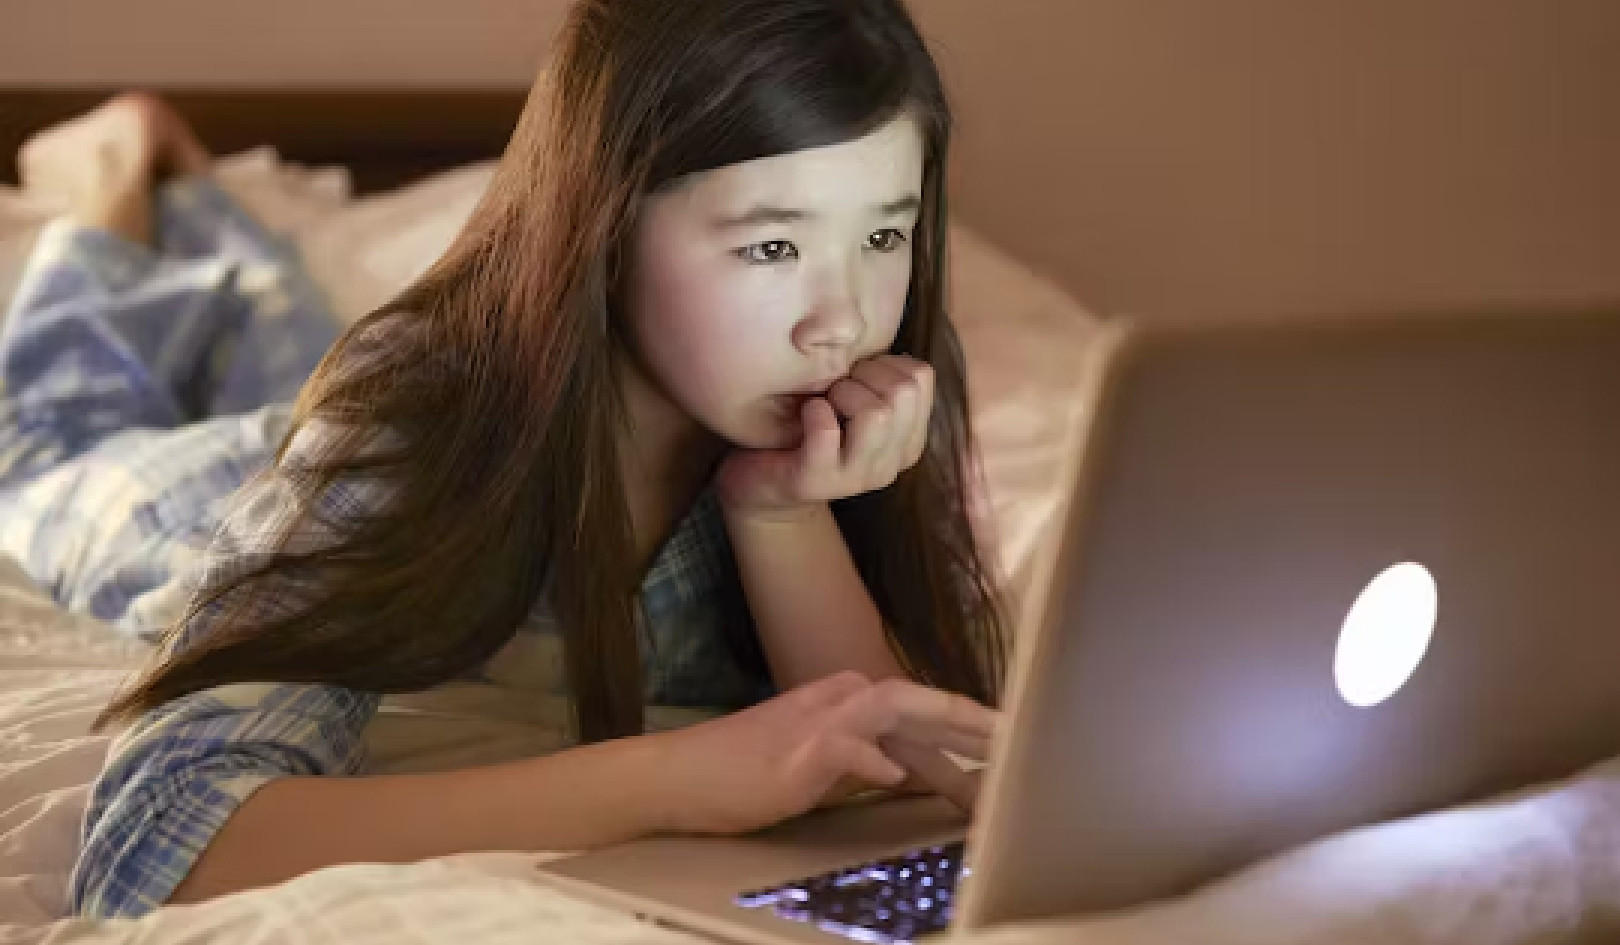 Barnas webkameraer blir målrettet av online rovdyr